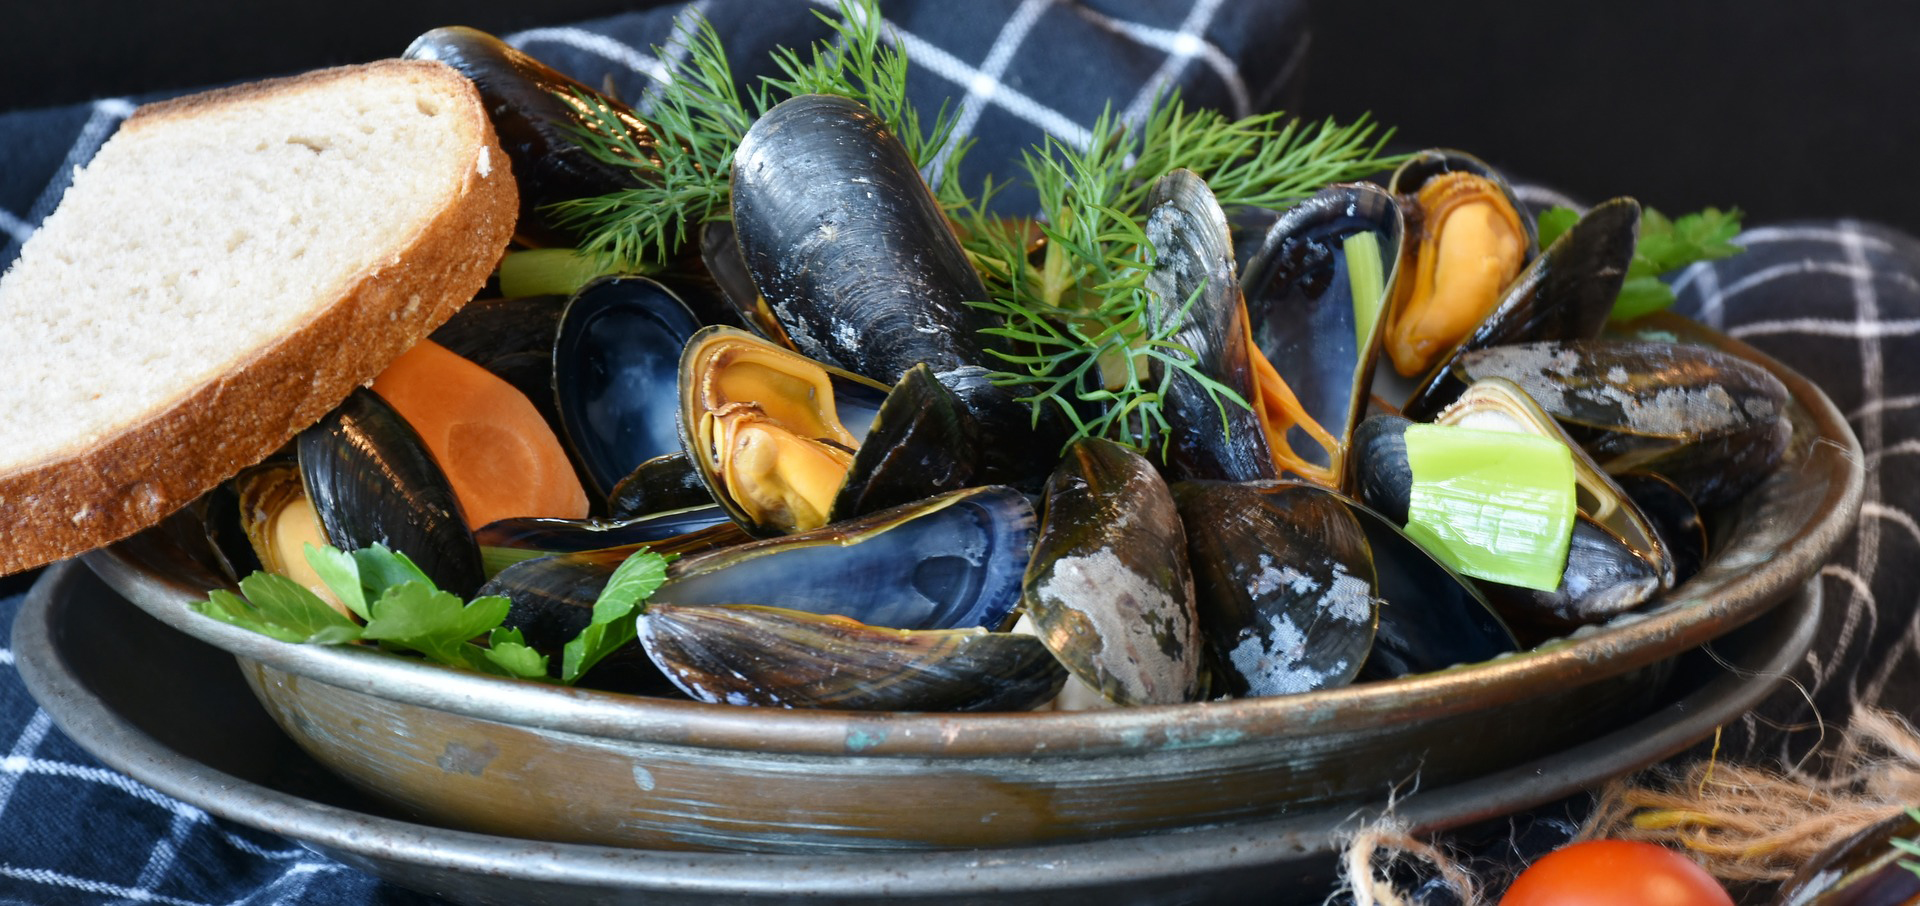 De  foodie  gids  voor  Yerseke,  de  beste  plek  om  mossels,  oesters  en  kreeft  in  Zeeland  te  proberen  